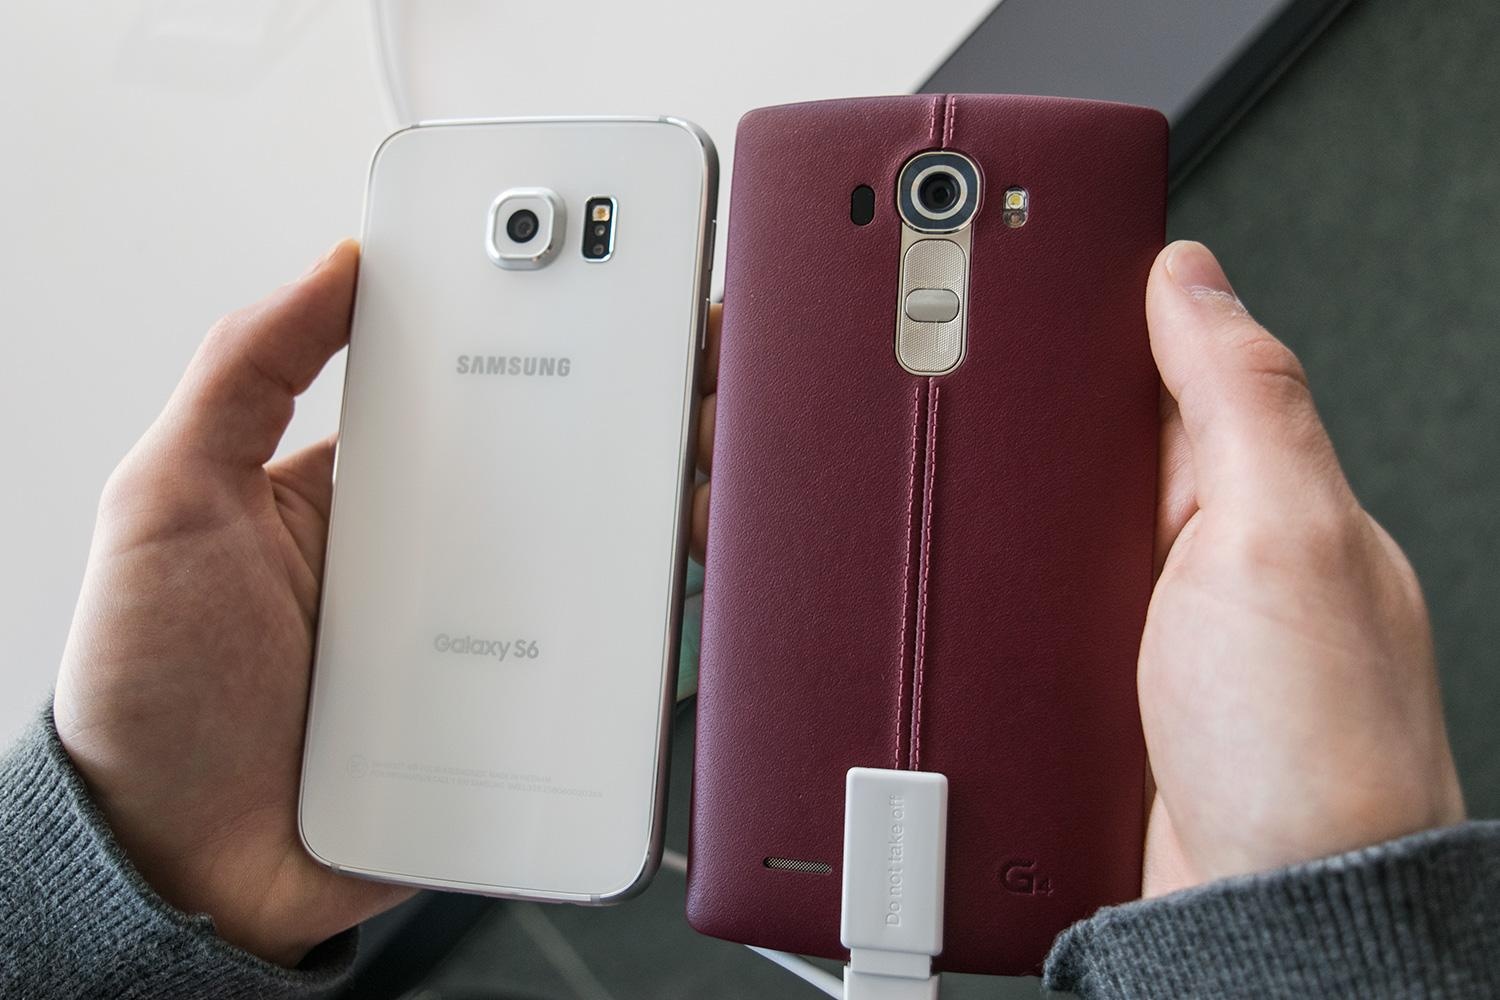 مقایسه کیفیت دوربین Galaxy S6 و LG G4 - تکفارس 